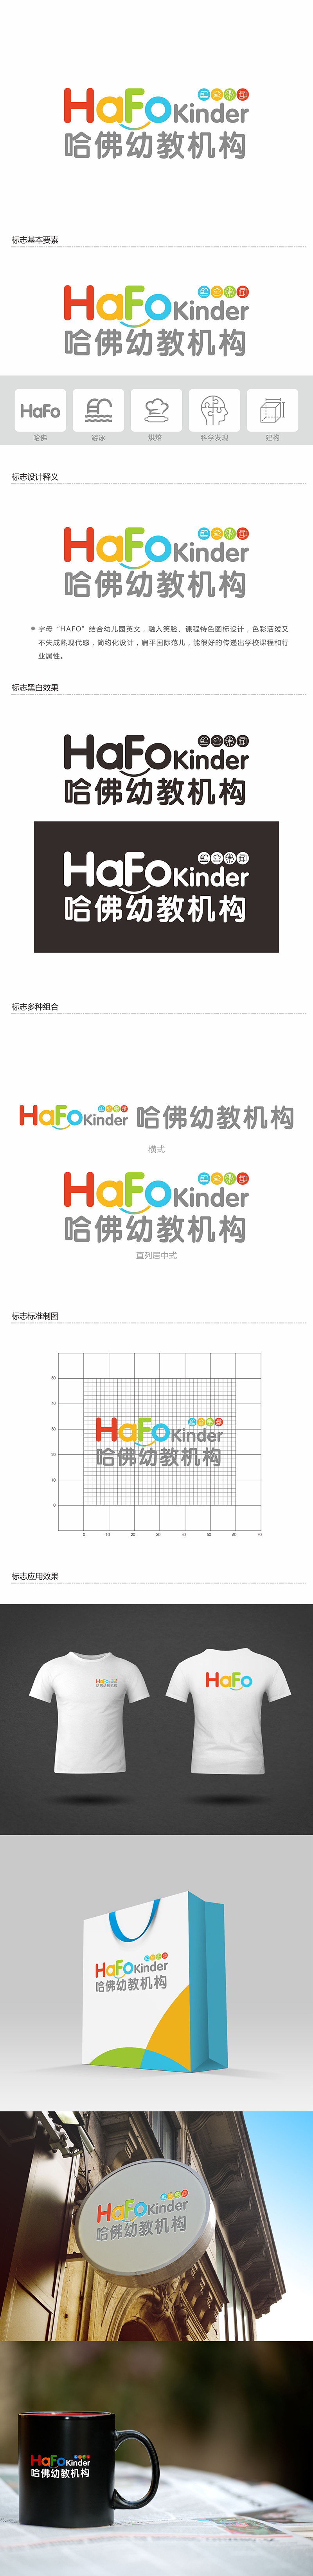 郑锦尚的哈佛幼教机构logo设计